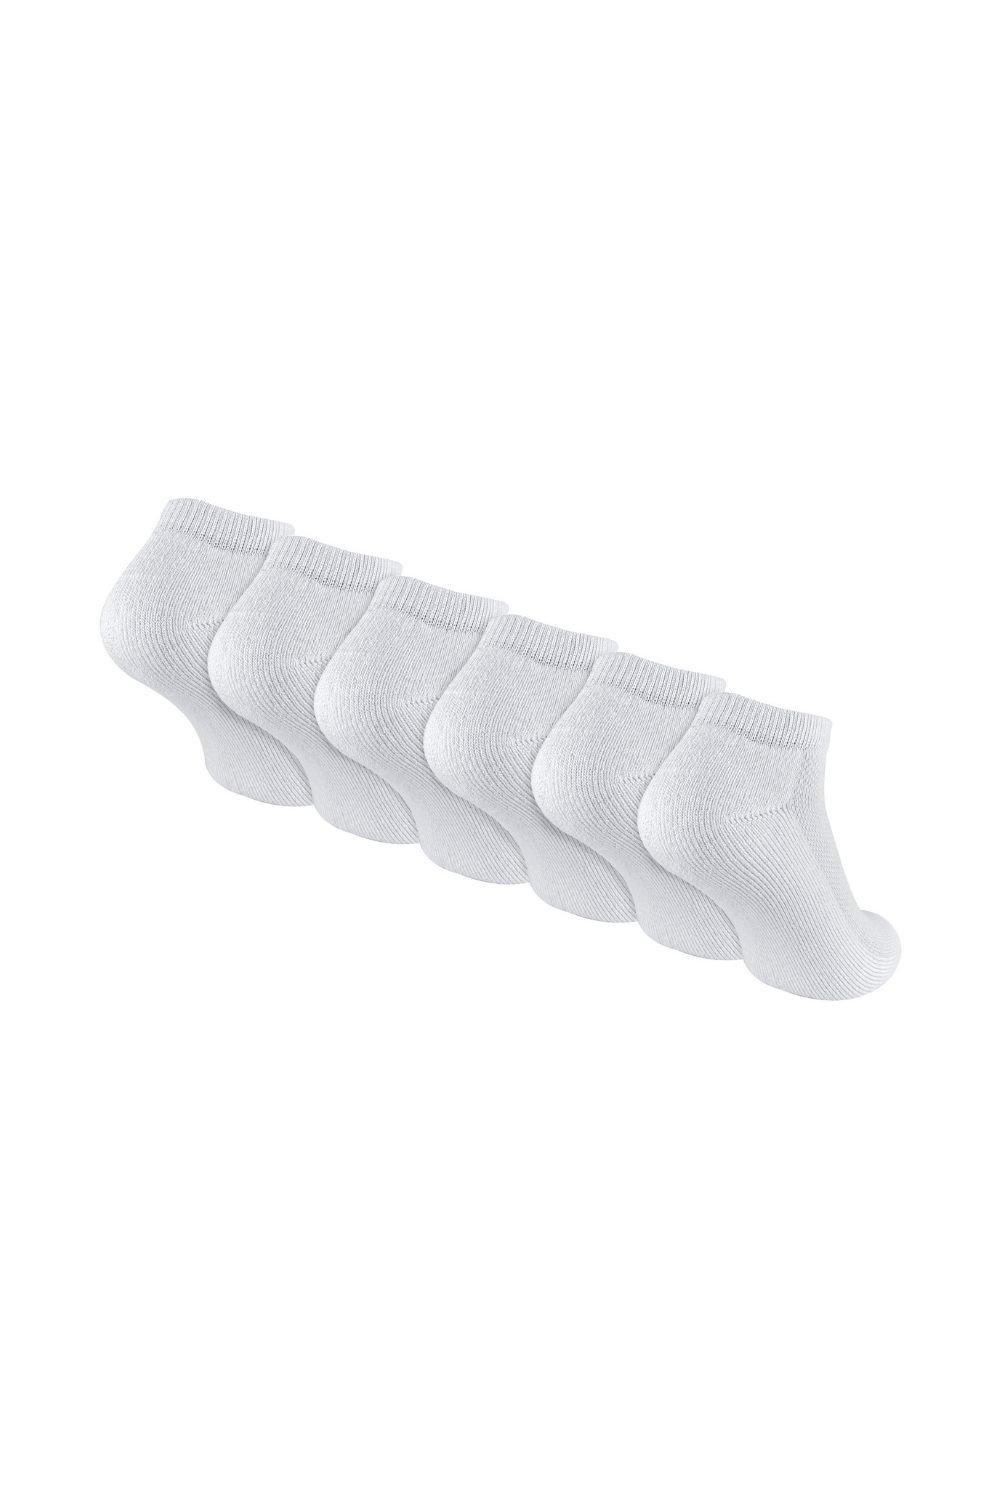 Underwear & Socks | 6 Pair Multipack White Bamboo Trainer Socks | Sock Snob